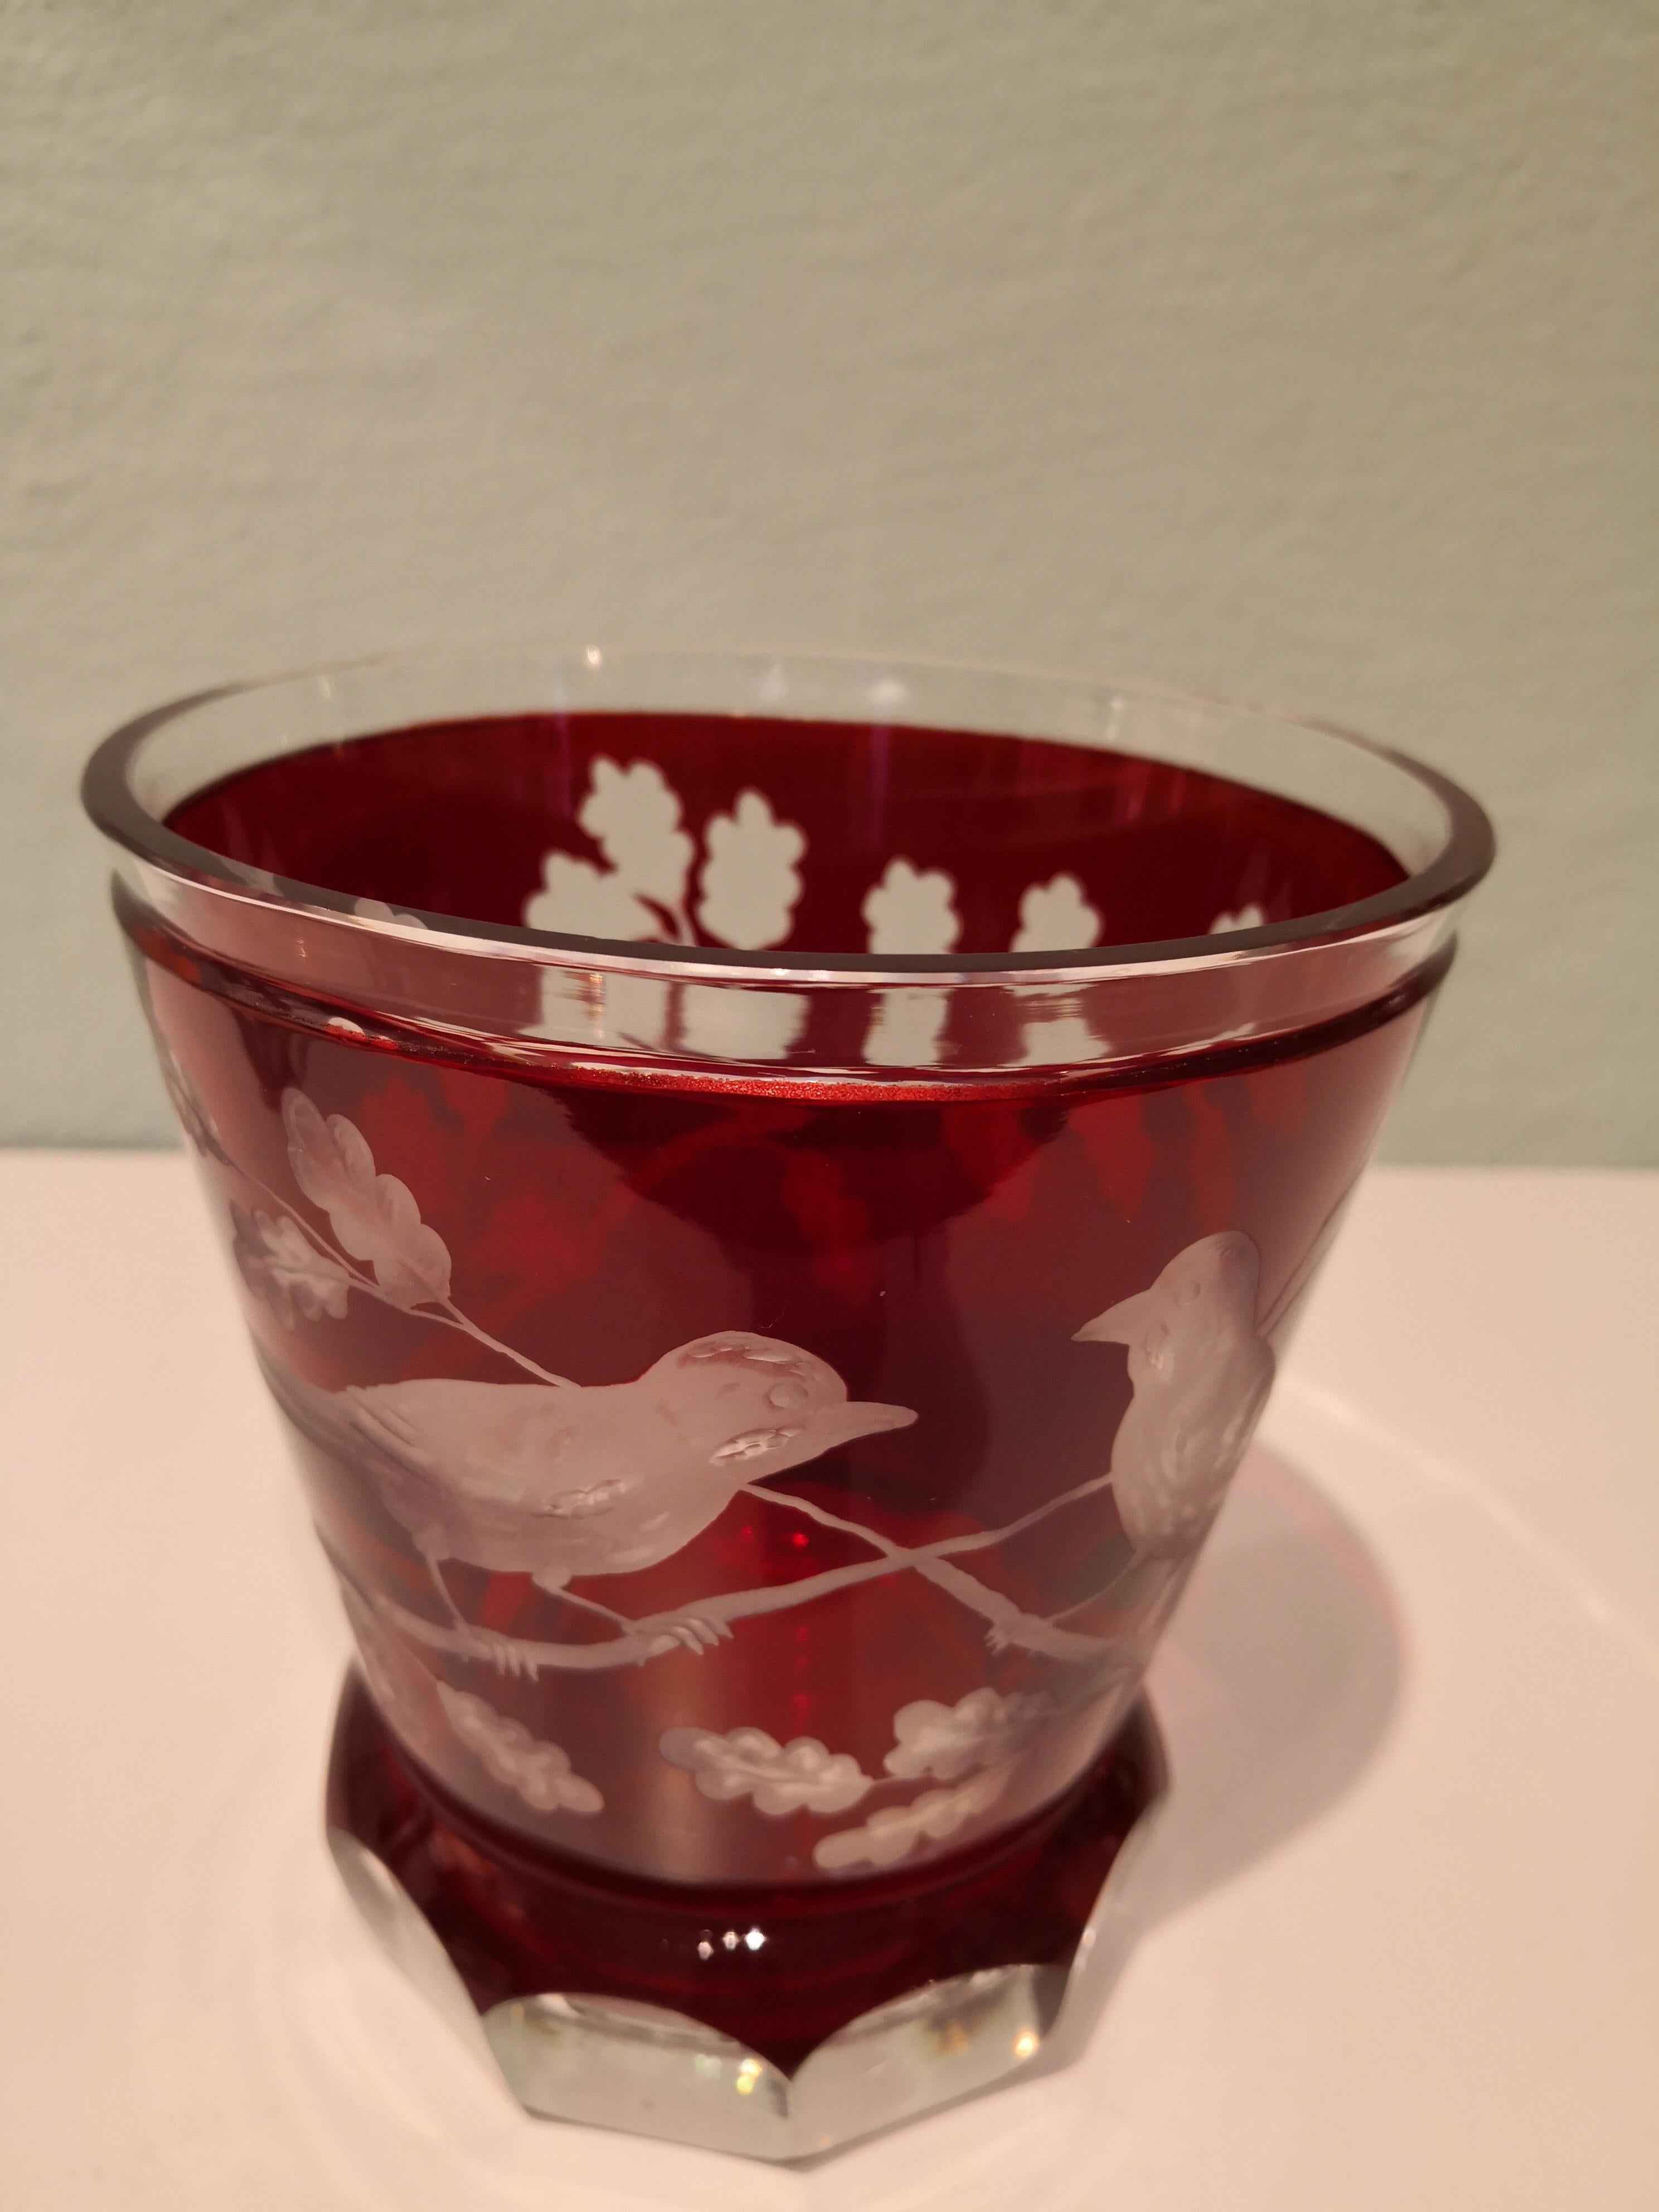 Handgeblasene Kristallvase/Laterne in leuchtendem Rot. Handgeschnitzt von bayerischen Glaskünstlern mit einem Vogeldekor im Landhausstil. Eine reiche Eichenlaubgirlande rundherum mit 2 handgravierten Vögeln. Kann mit einer Kerze als Laterne oder als